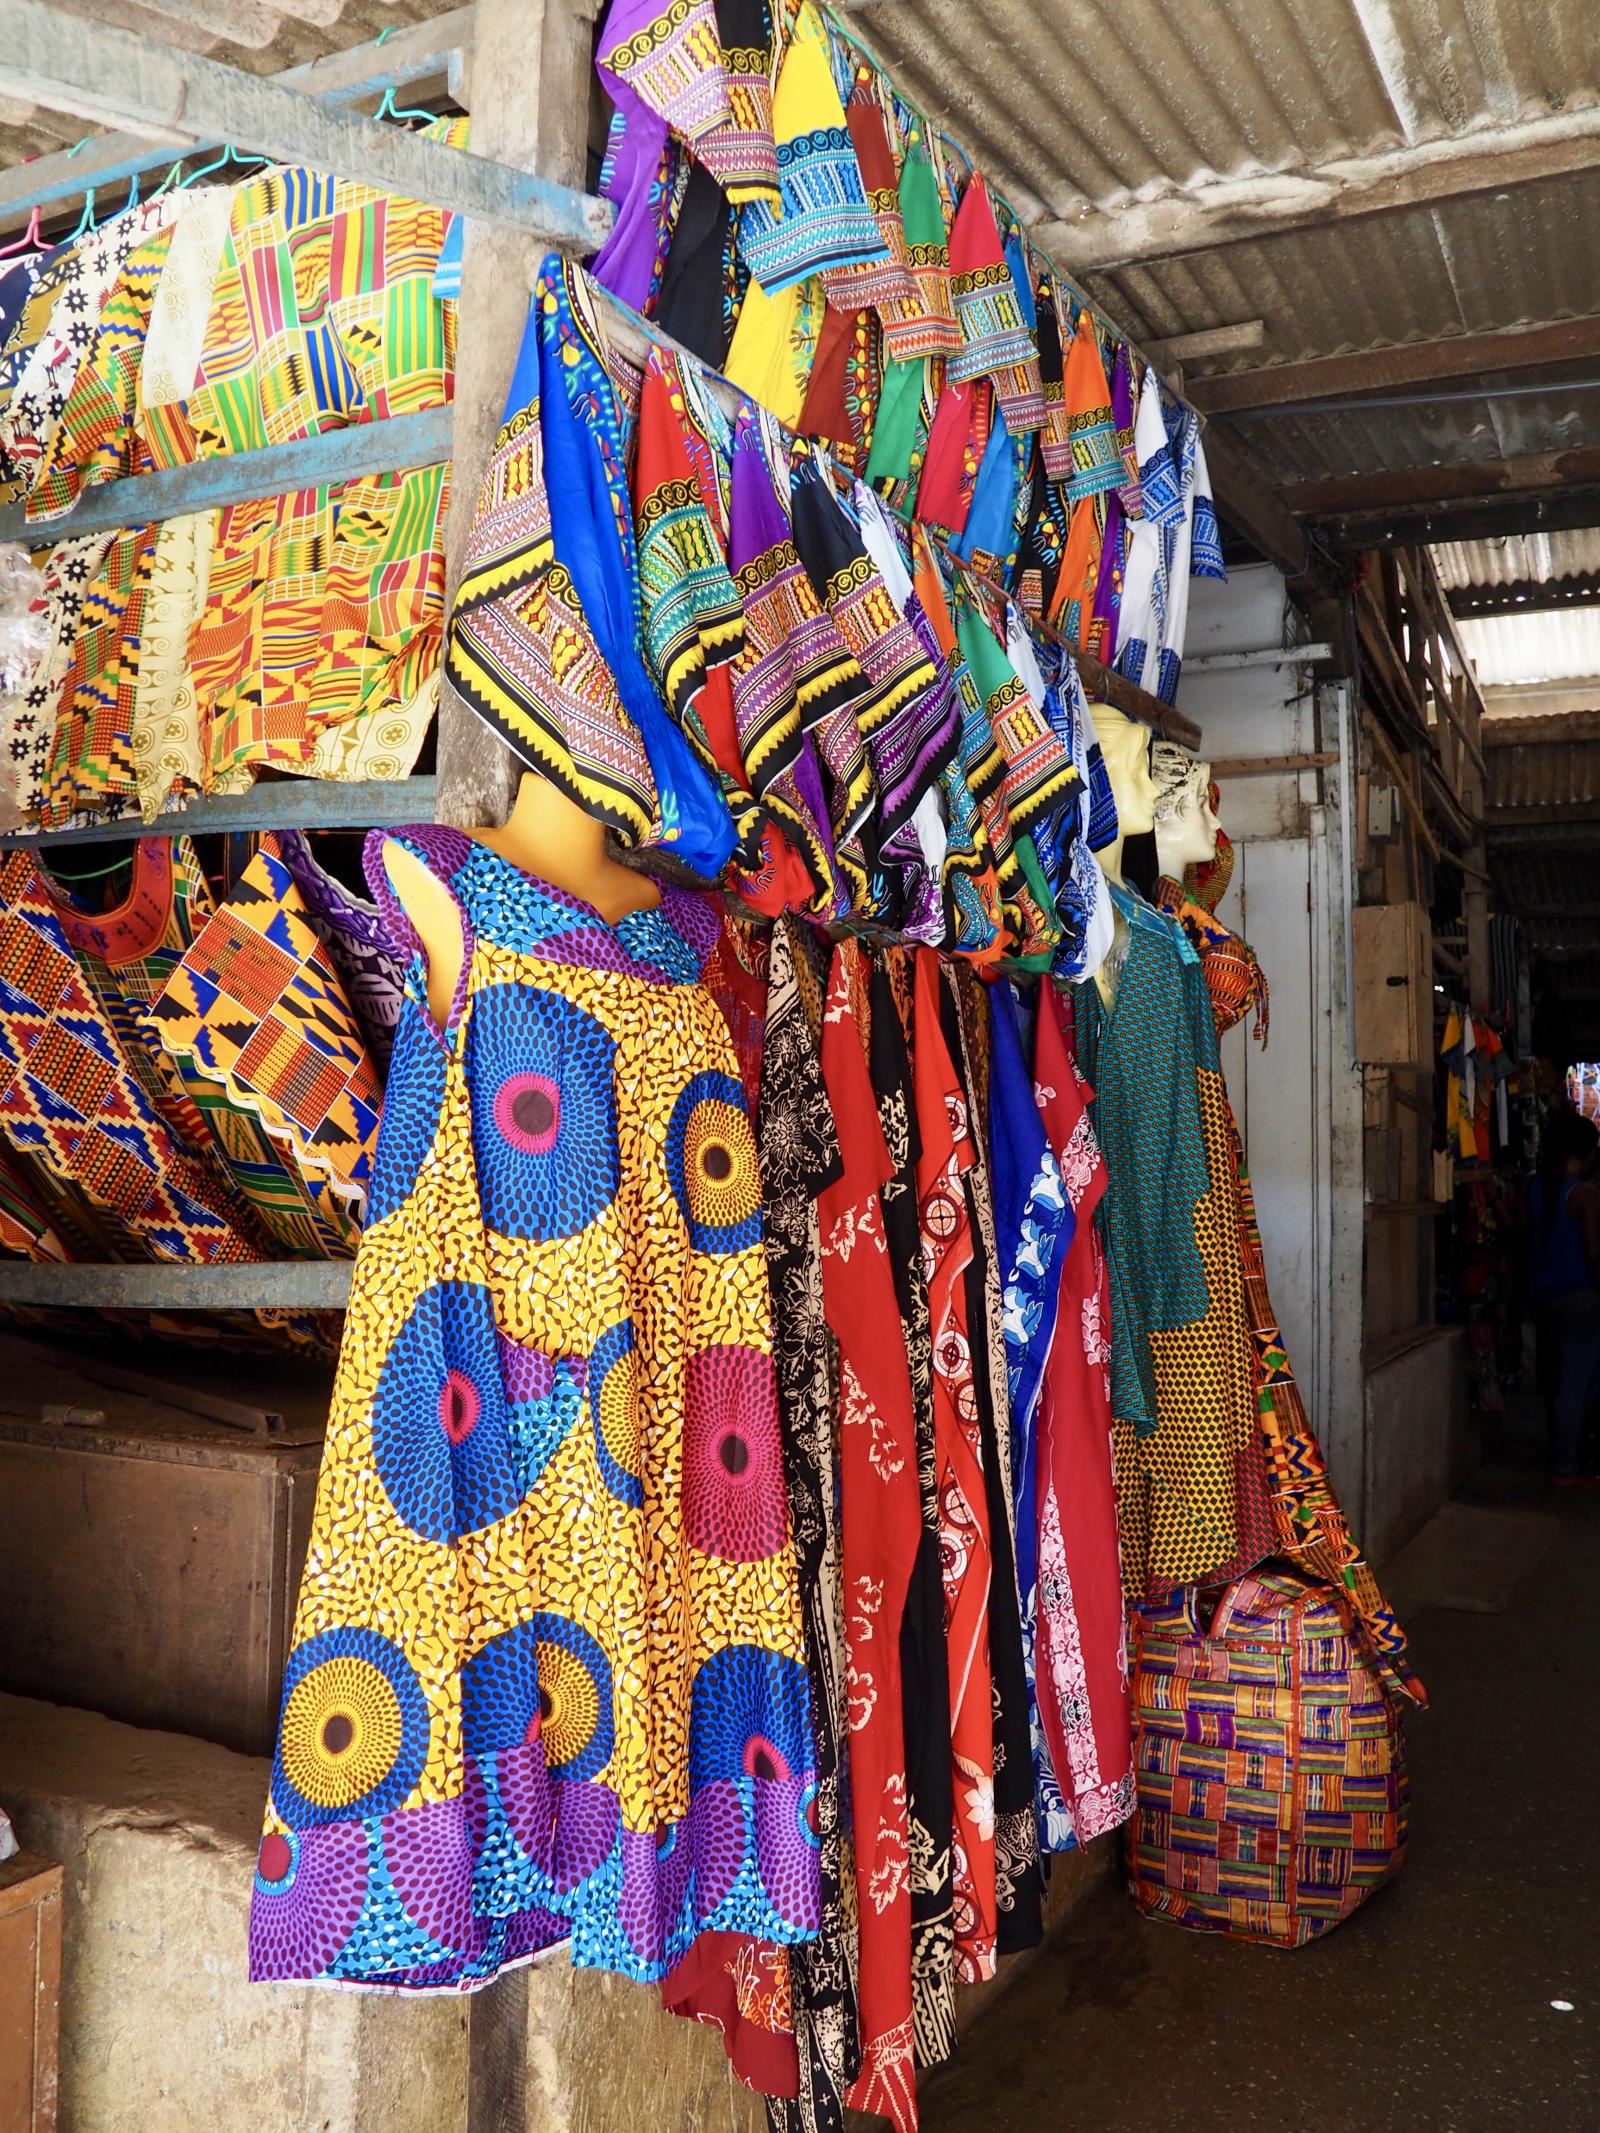 A trip to Accra, Ghana | The Dubai Diaries